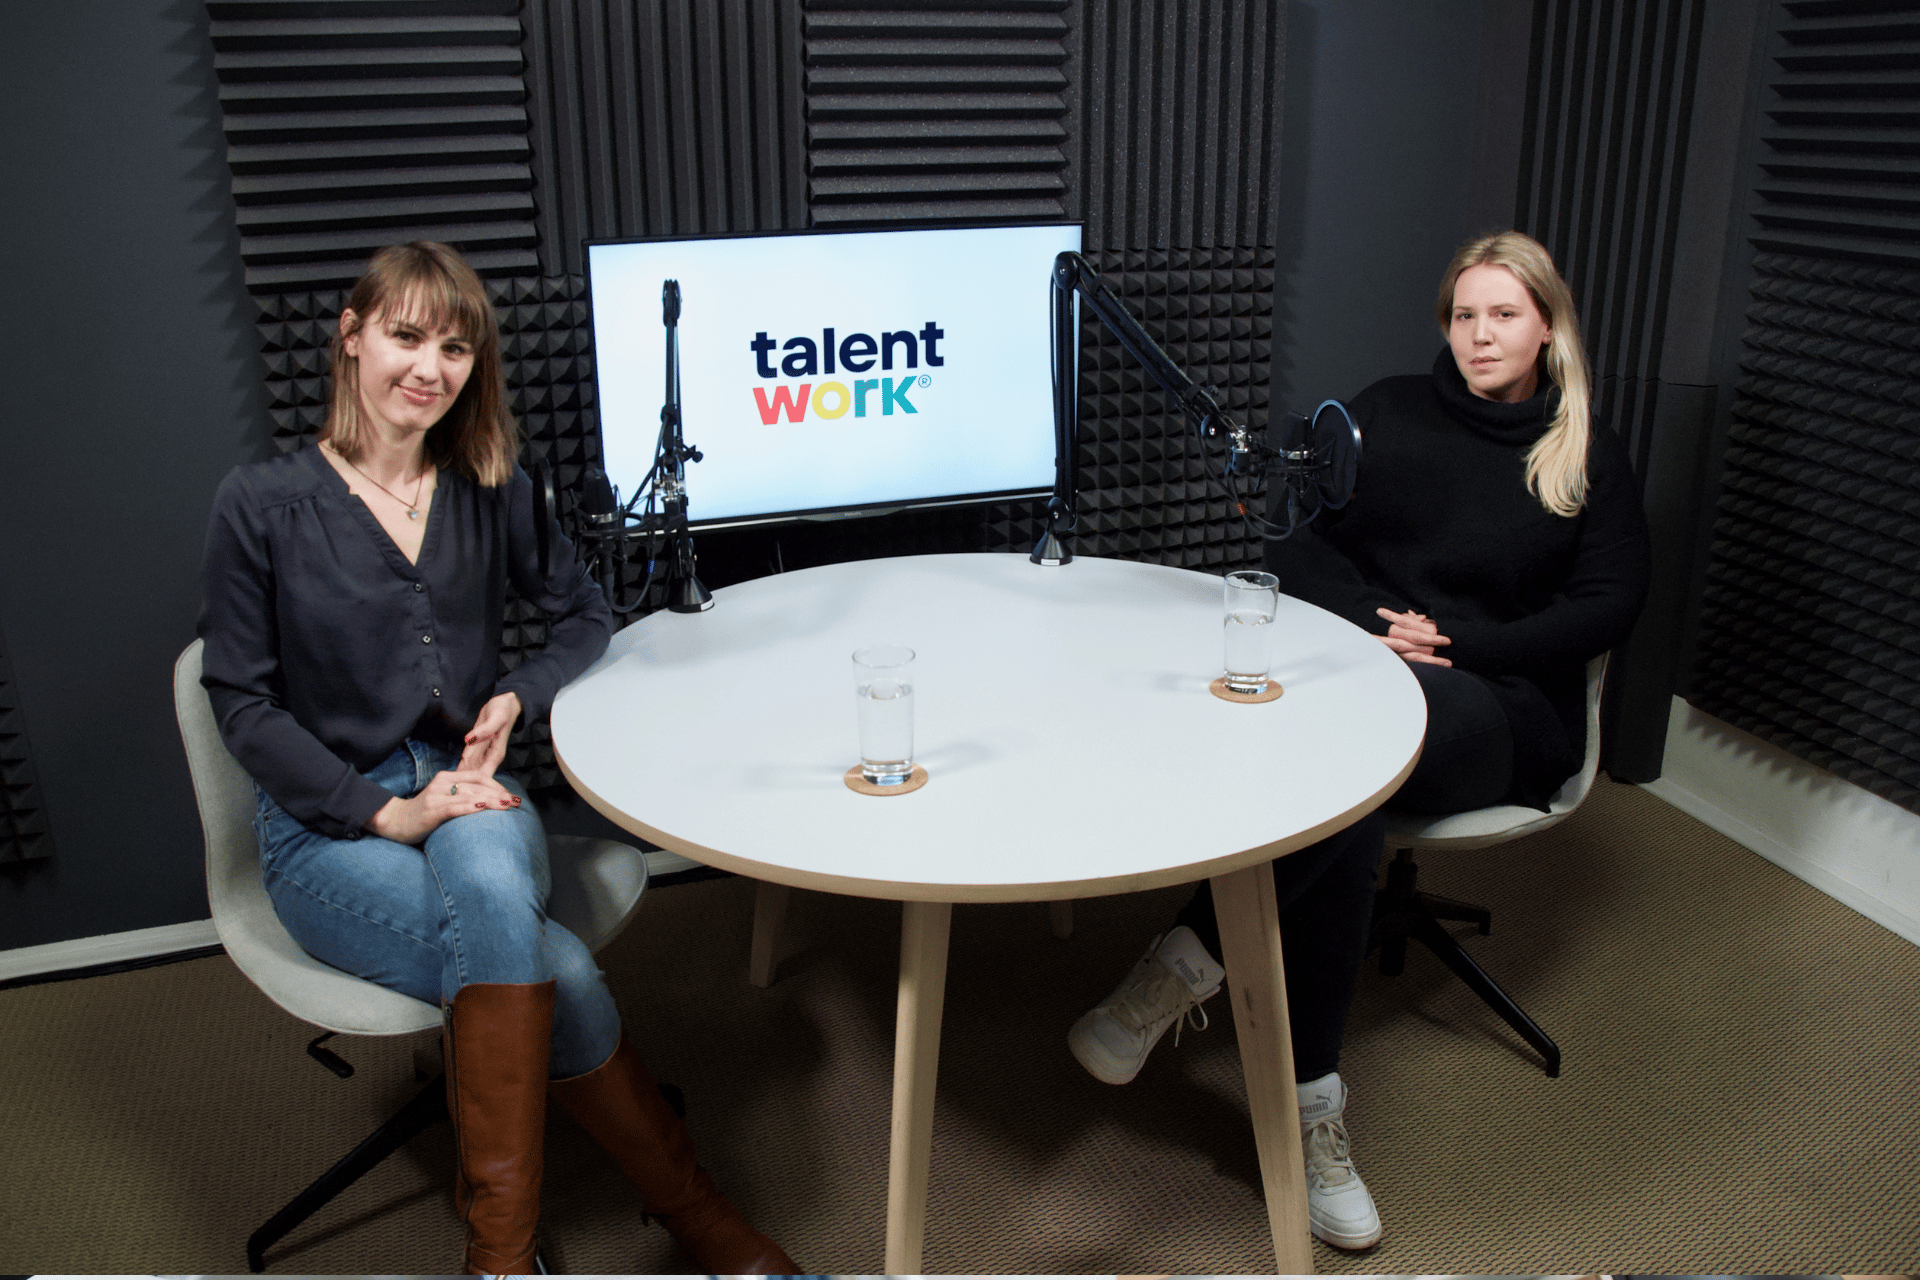 Podcast: Talentwork nám pomohl pojmenovat, co se ve firmě děje, říká Kristýna Leniczká z Geetoo